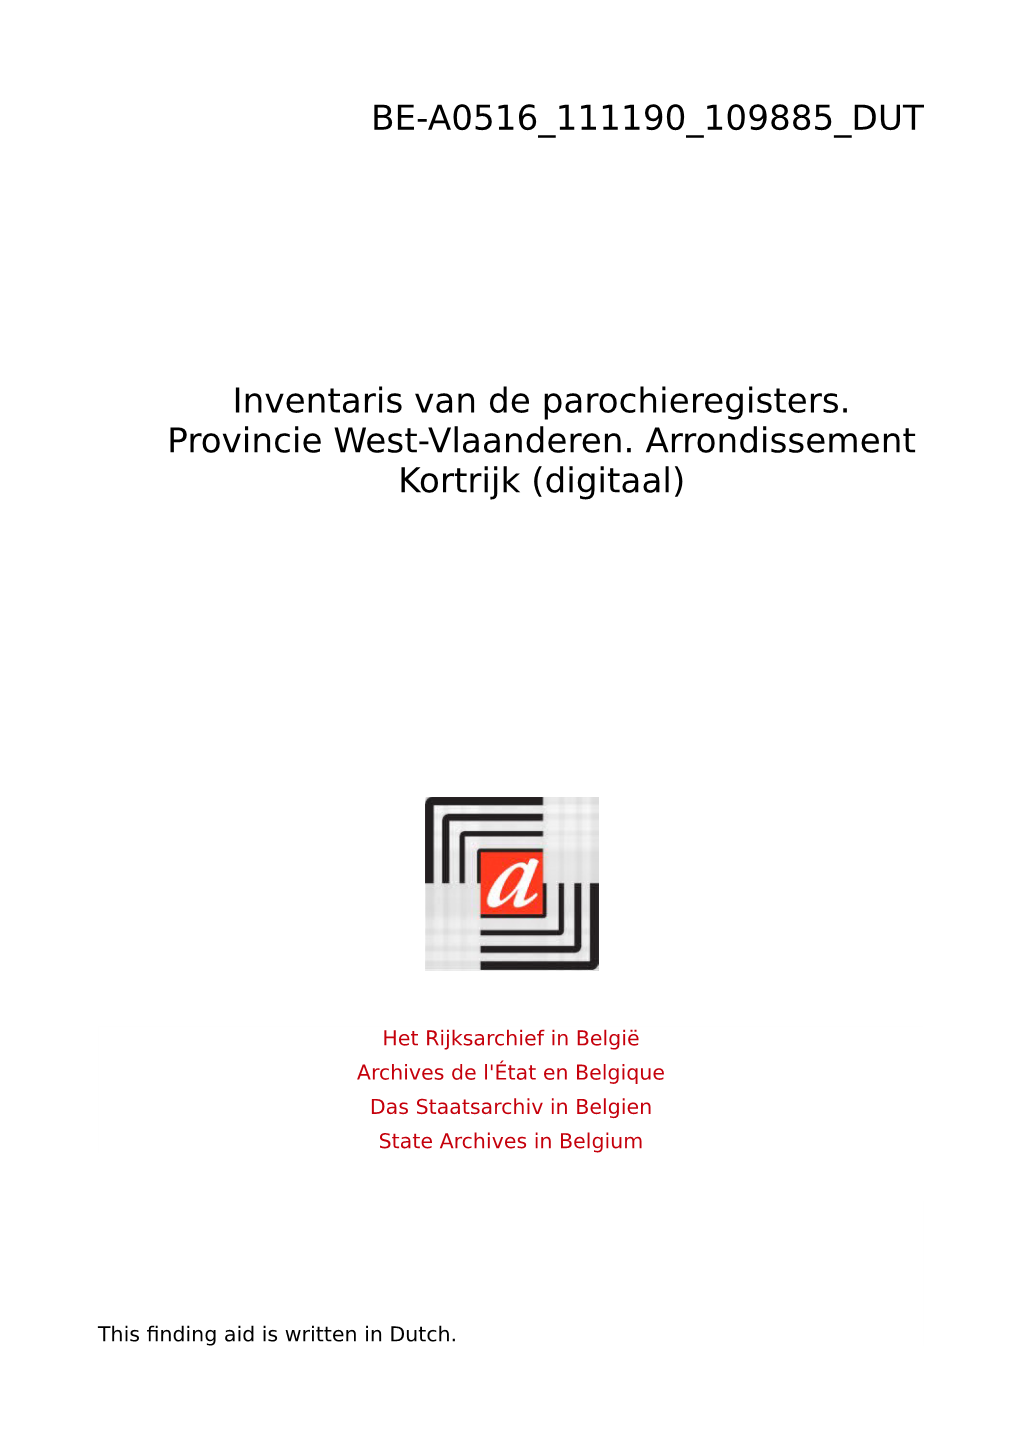 Parochieregisters Provincie West-Vlaanderen. Arrondissement Kortrijk (Digitaal)